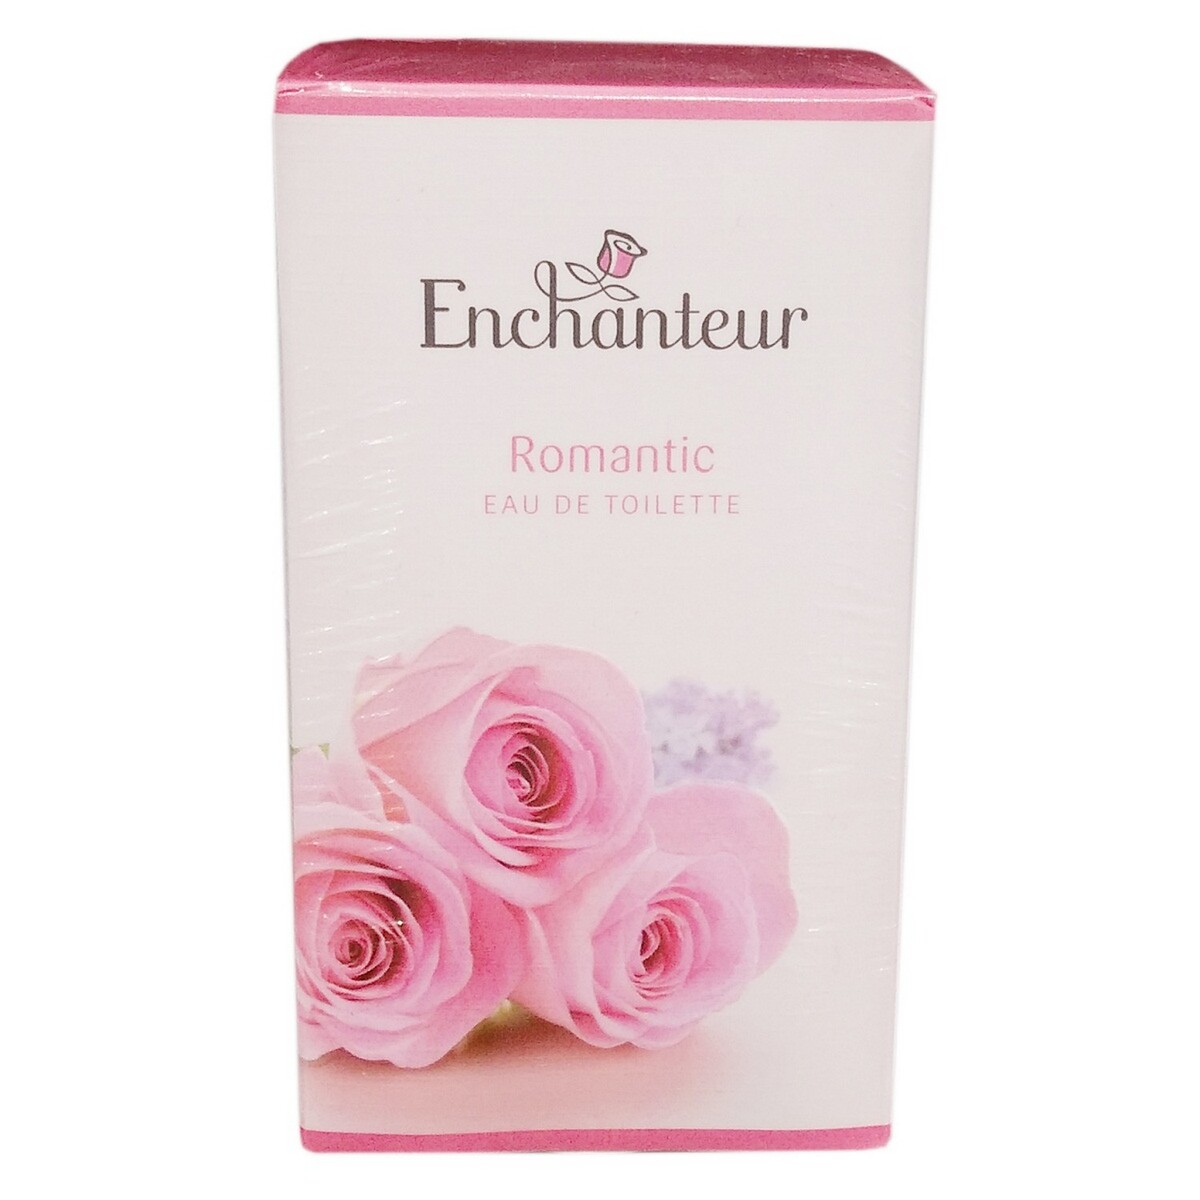 Enchanteur Women EDT Romantic 50ml